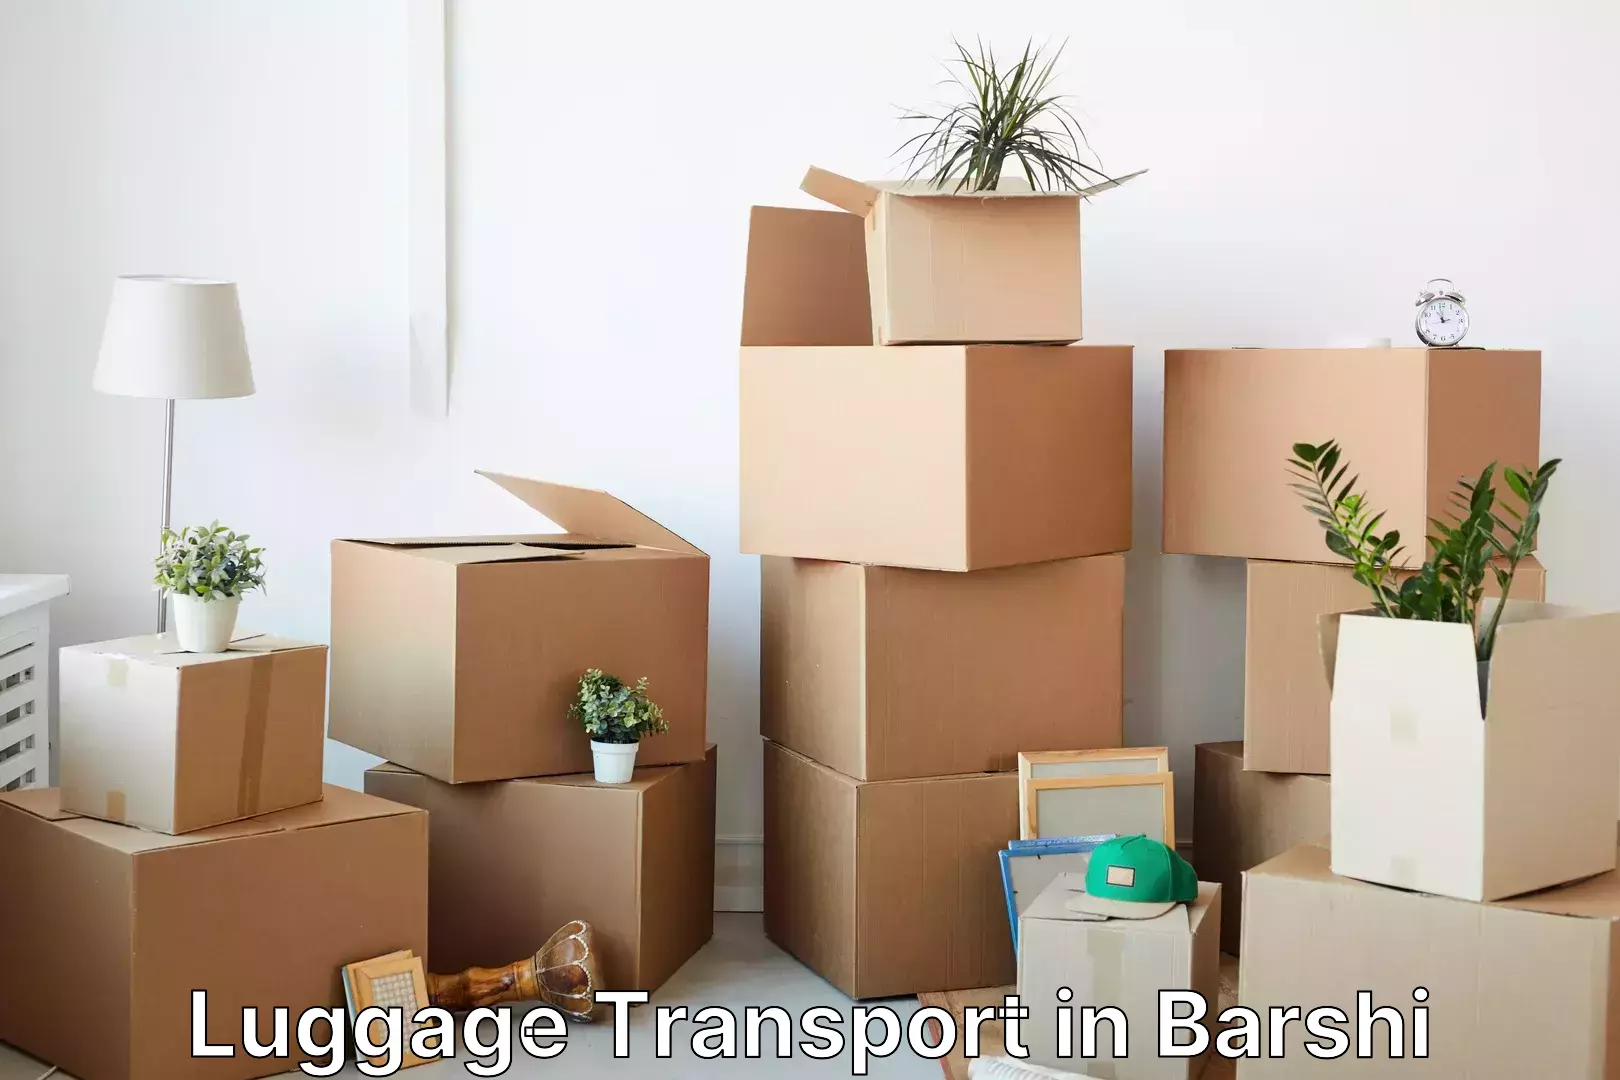 Unaccompanied luggage service in Barshi